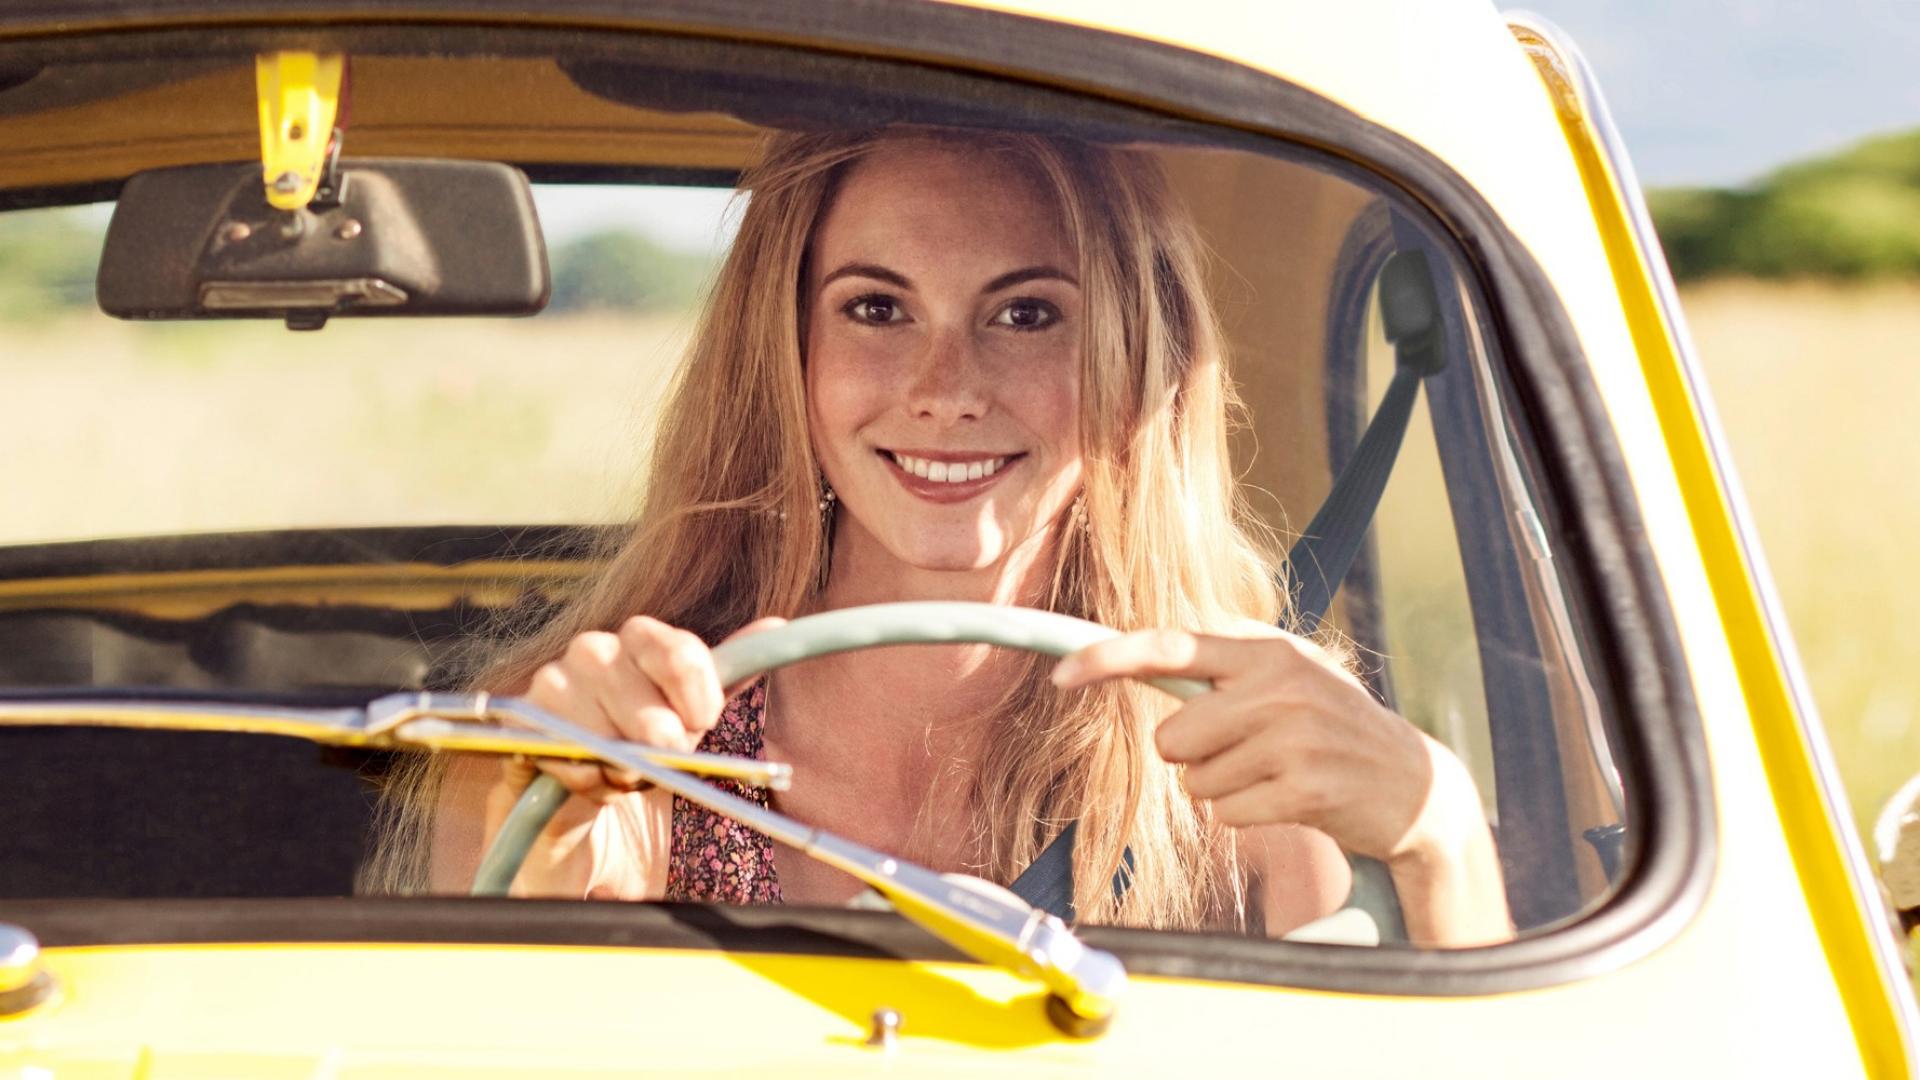 Eine Frau sitzt hinter dem Steuer eines gelben Autos und lächelt.